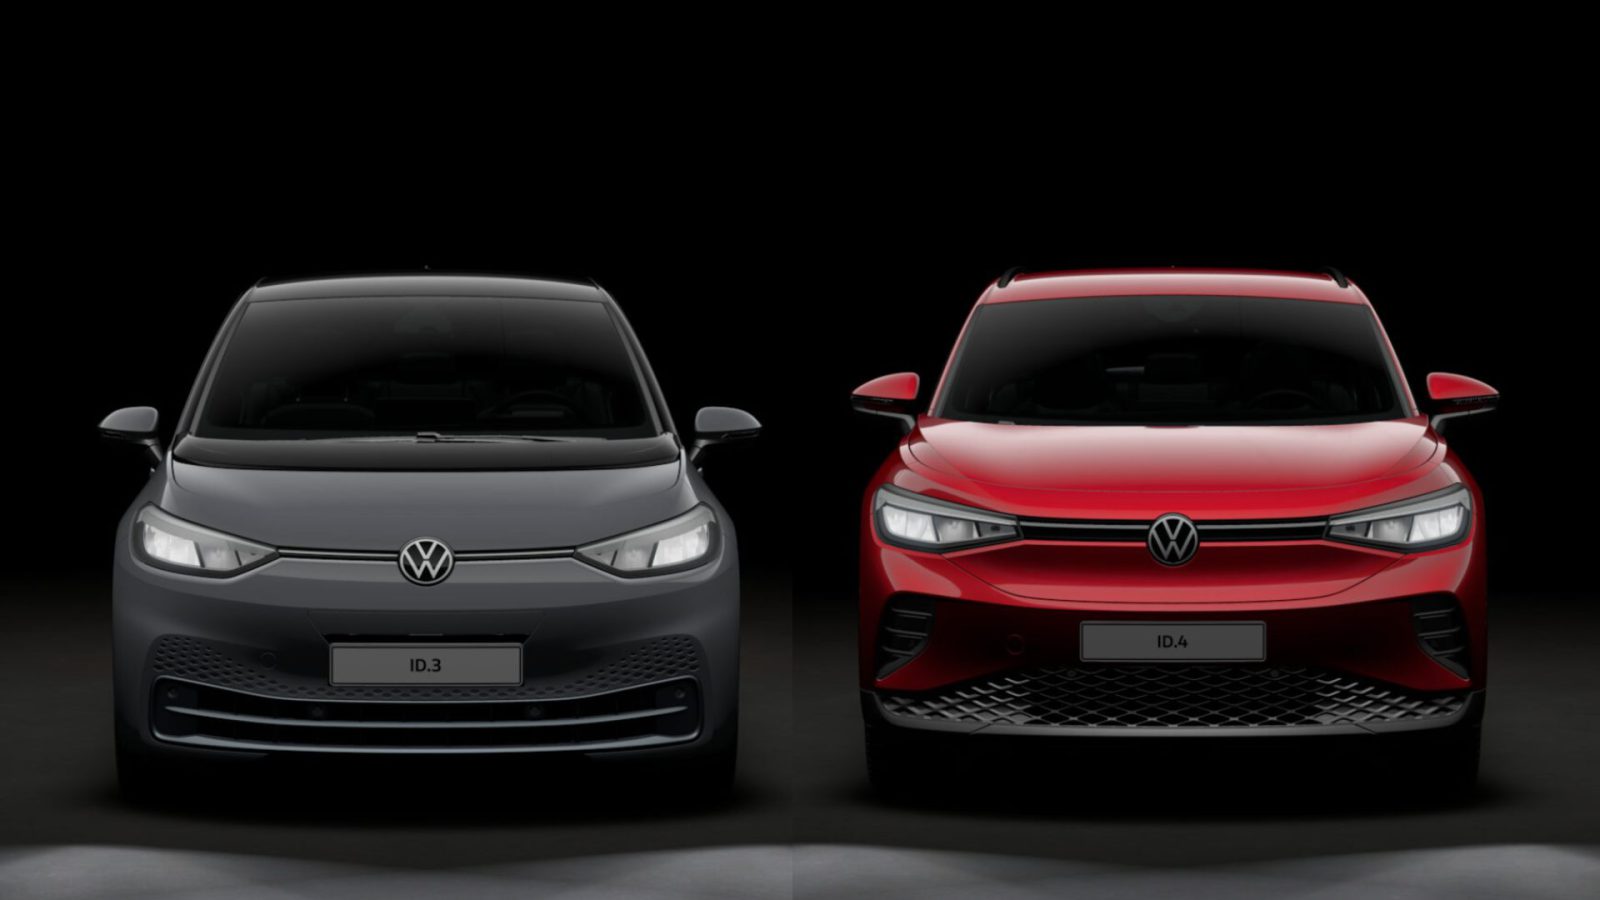 Vooraanzicht van twee elektrische voertuigen van Volkswagen: links een grijze ID.3 en rechts een opvallende rode Volkswagen ID.4, beide tegen een donkere achtergrond.